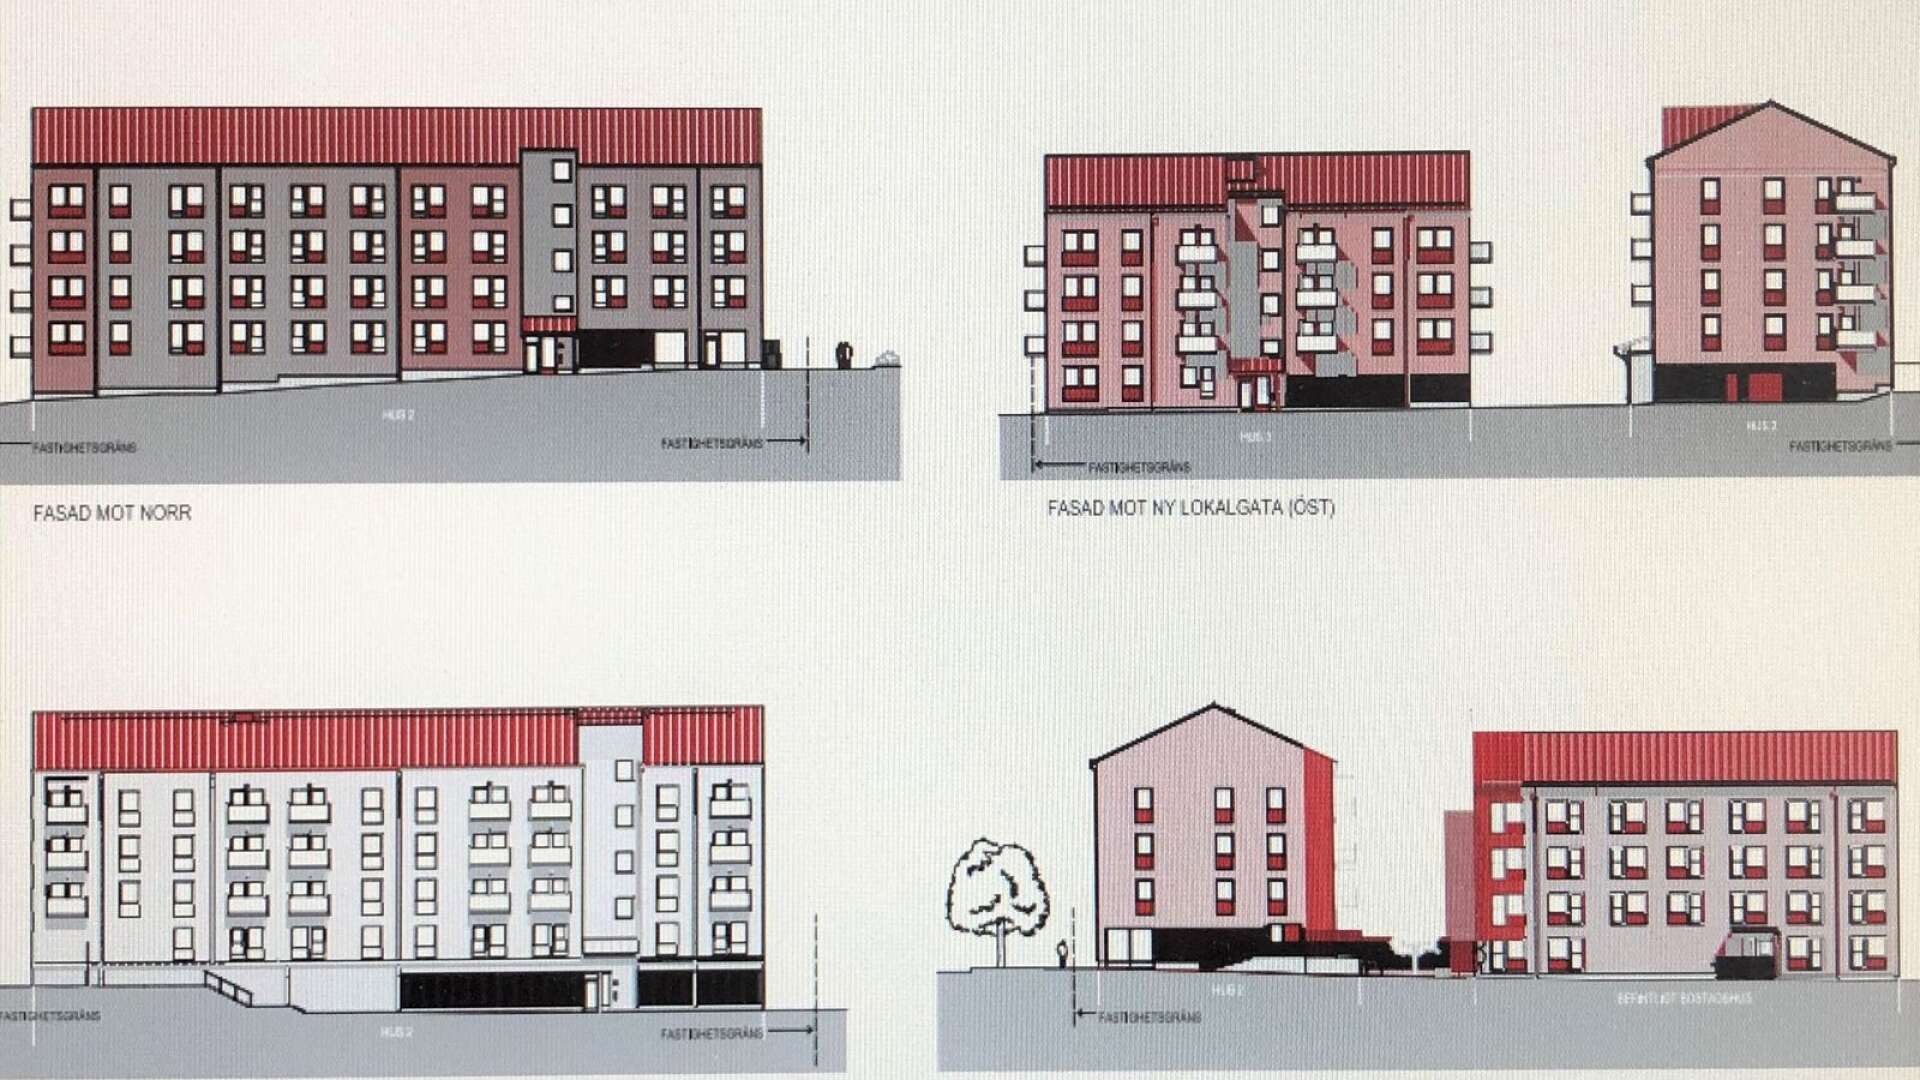 Totalt ska det byggas 88 lägenheter i två hus längs Rosenborgsgatan på Jakobsberg.